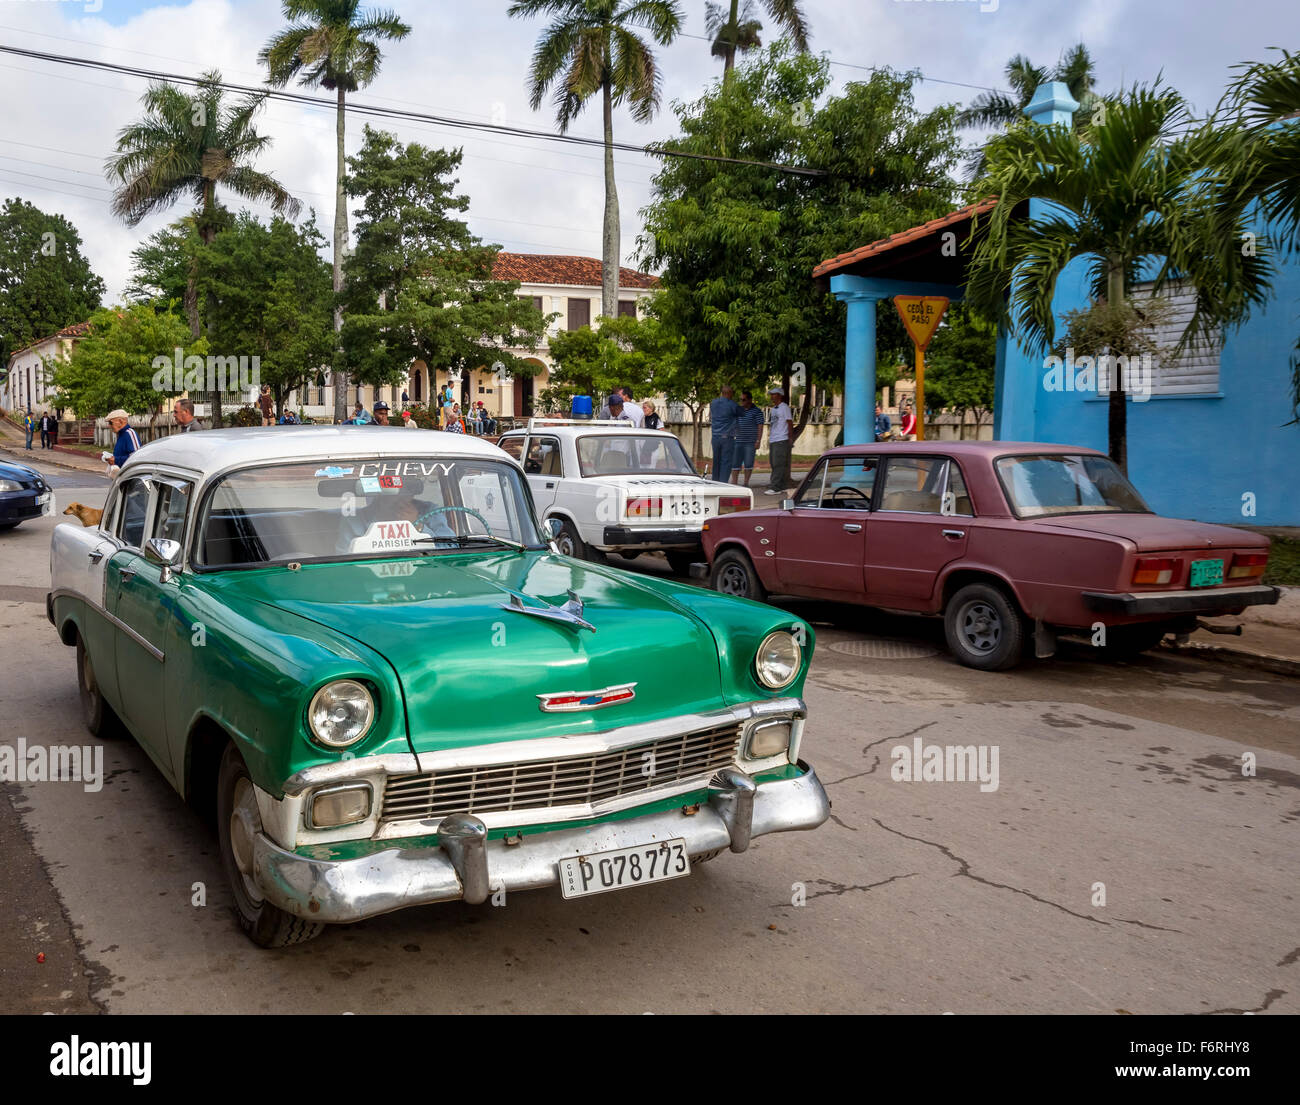 Vintage, antigua carretera de Chevrolet, Chevy, crucero en Viñales en el Valle de Viñales, coche de policía, Lada, Viñales, Cuba, Pinar del Río, Cuba Foto de stock